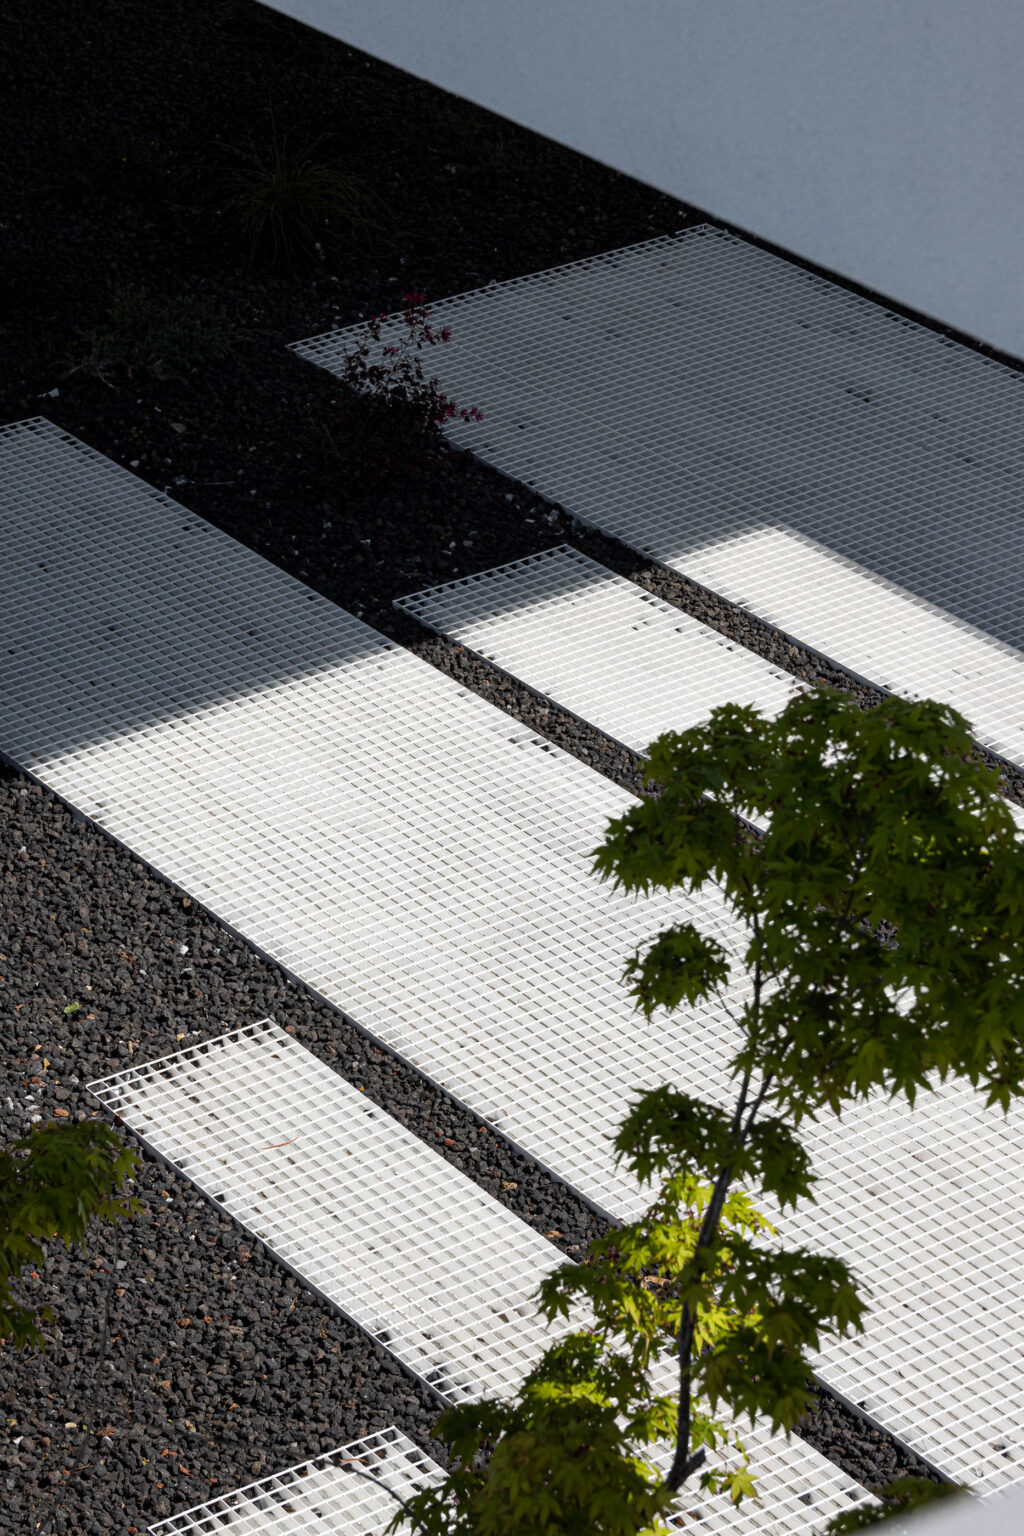 Un silent block de hormigón rayado blanco es la casa que se integra con su entorno a través de su serenidad